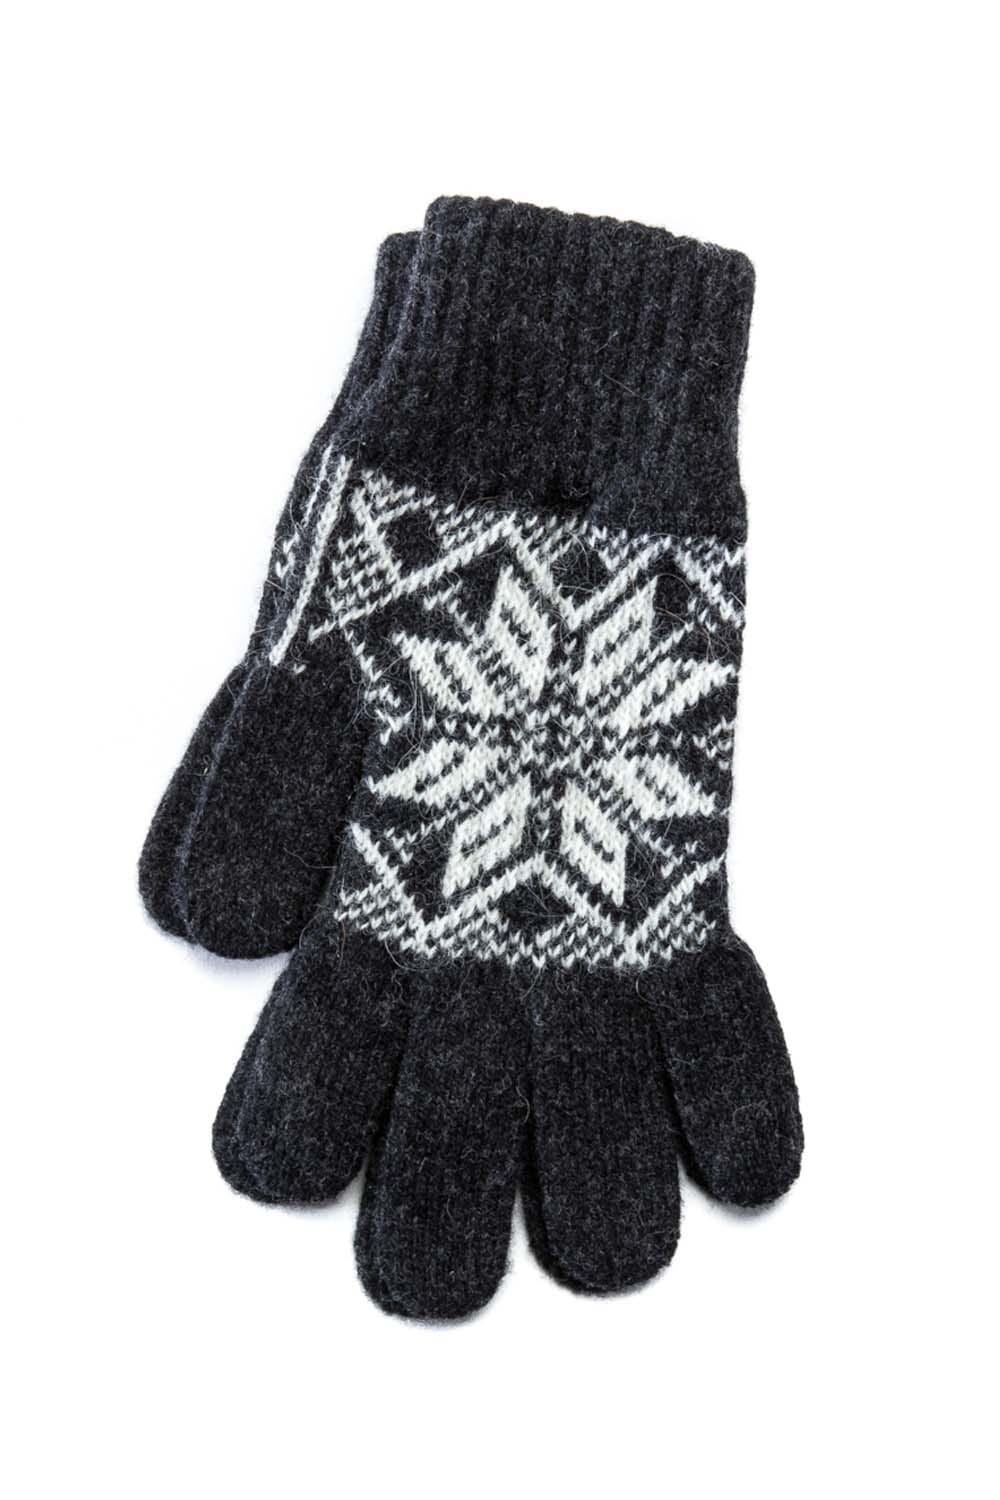 Icelandic Wool Gloves - Dark Grey - Women